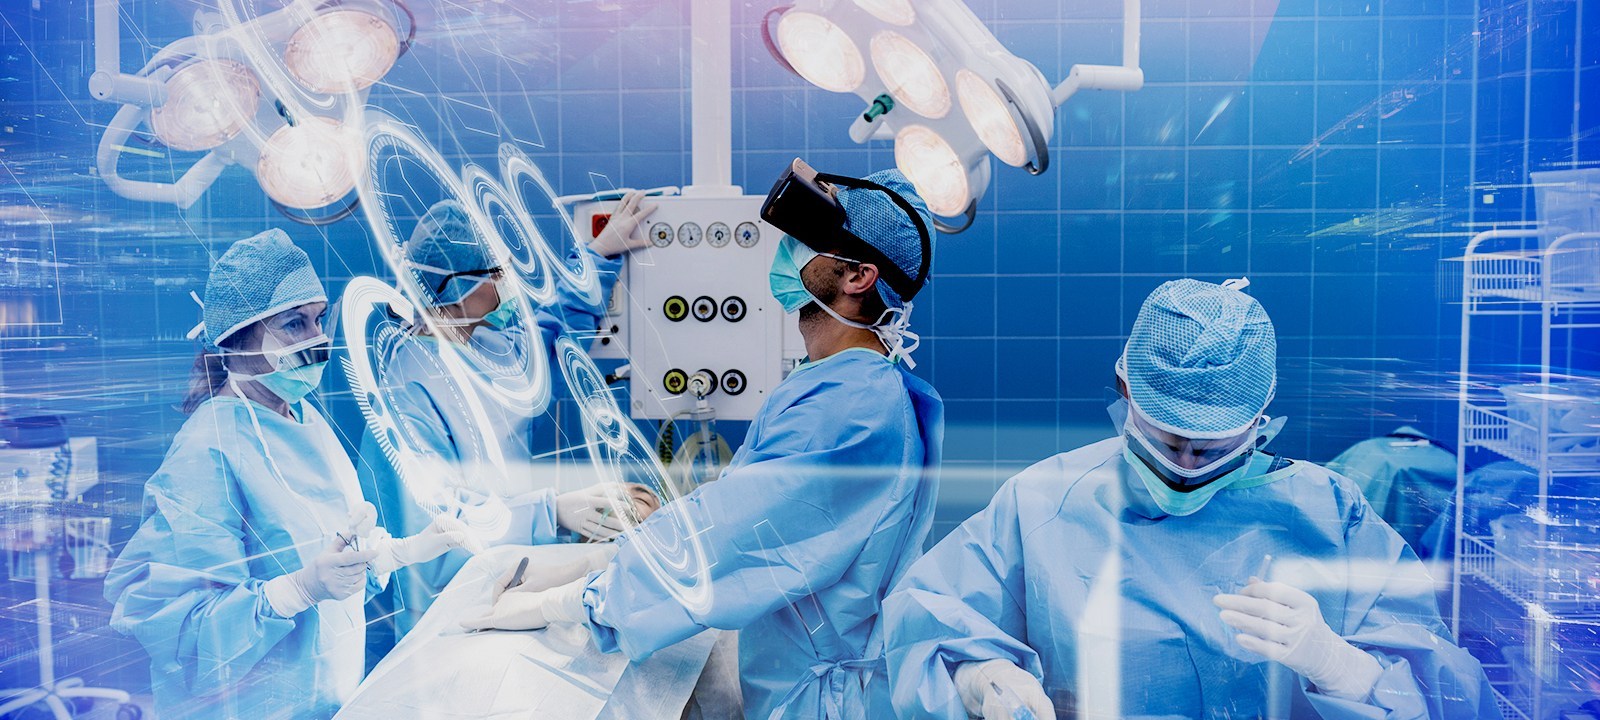 图片展示了一组穿着手术服的医护人员在手术室内工作，环境中充满了现代医疗设备，气氛紧张而专注。